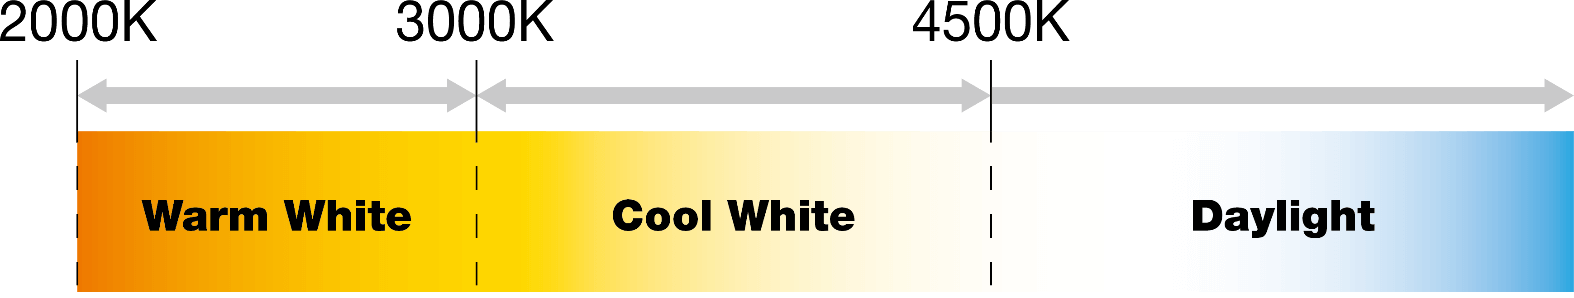 COOL WHITE VS WARM WHITE